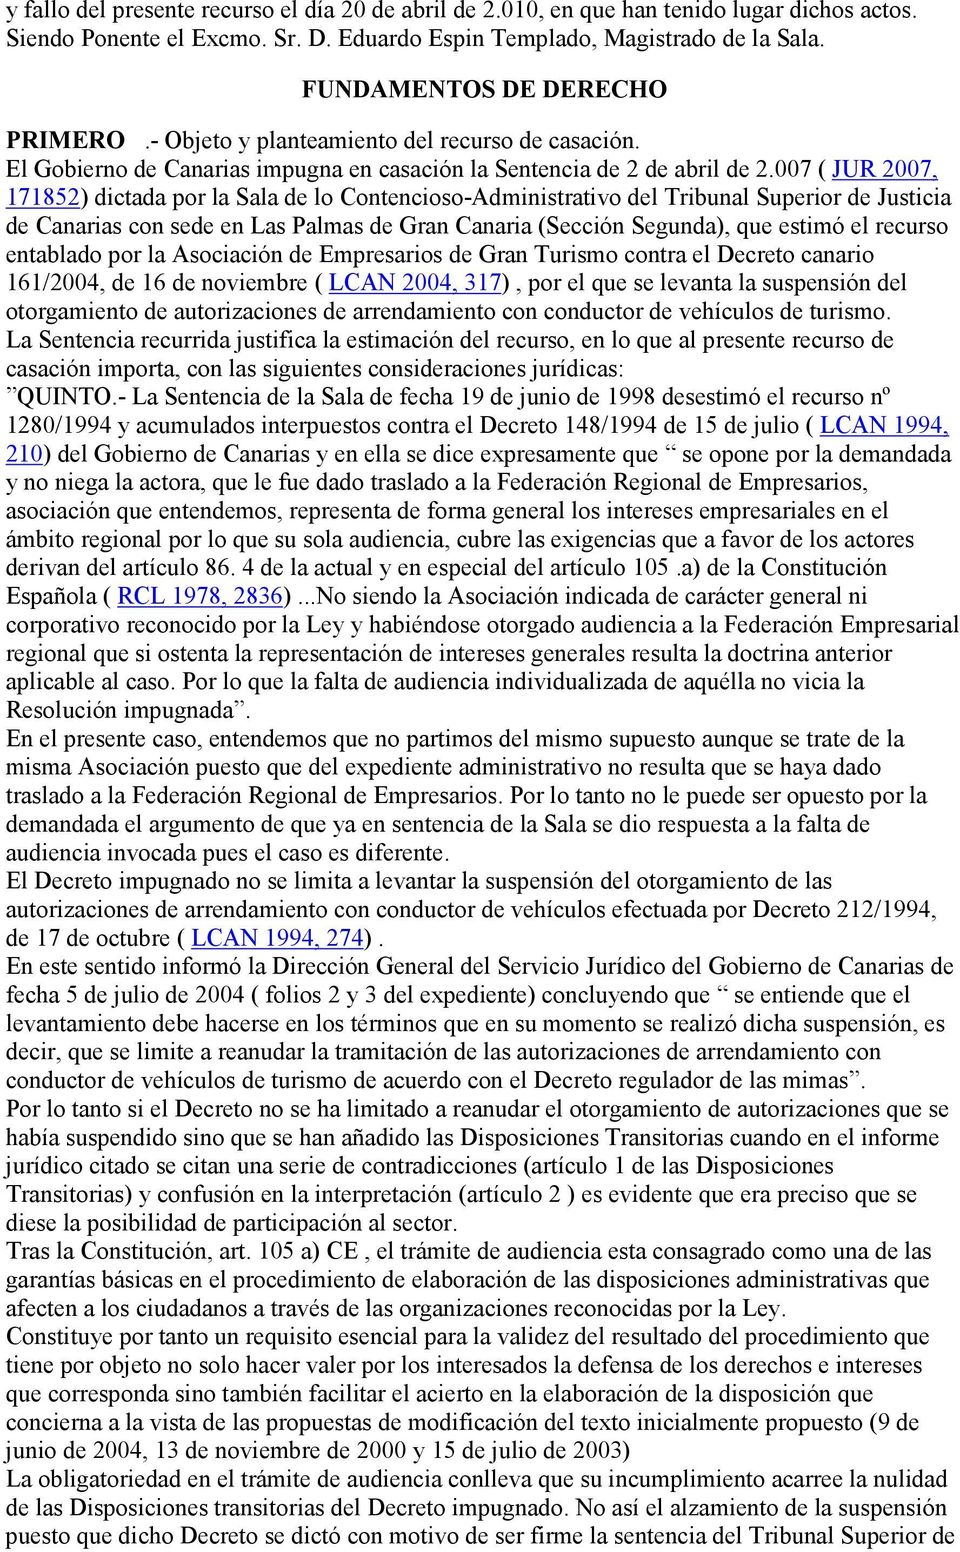 007 ( JUR 2007, 171852) dictada por la Sala de lo Contencioso-Administrativo del Tribunal Superior de Justicia de Canarias con sede en Las Palmas de Gran Canaria (Sección Segunda), que estimó el